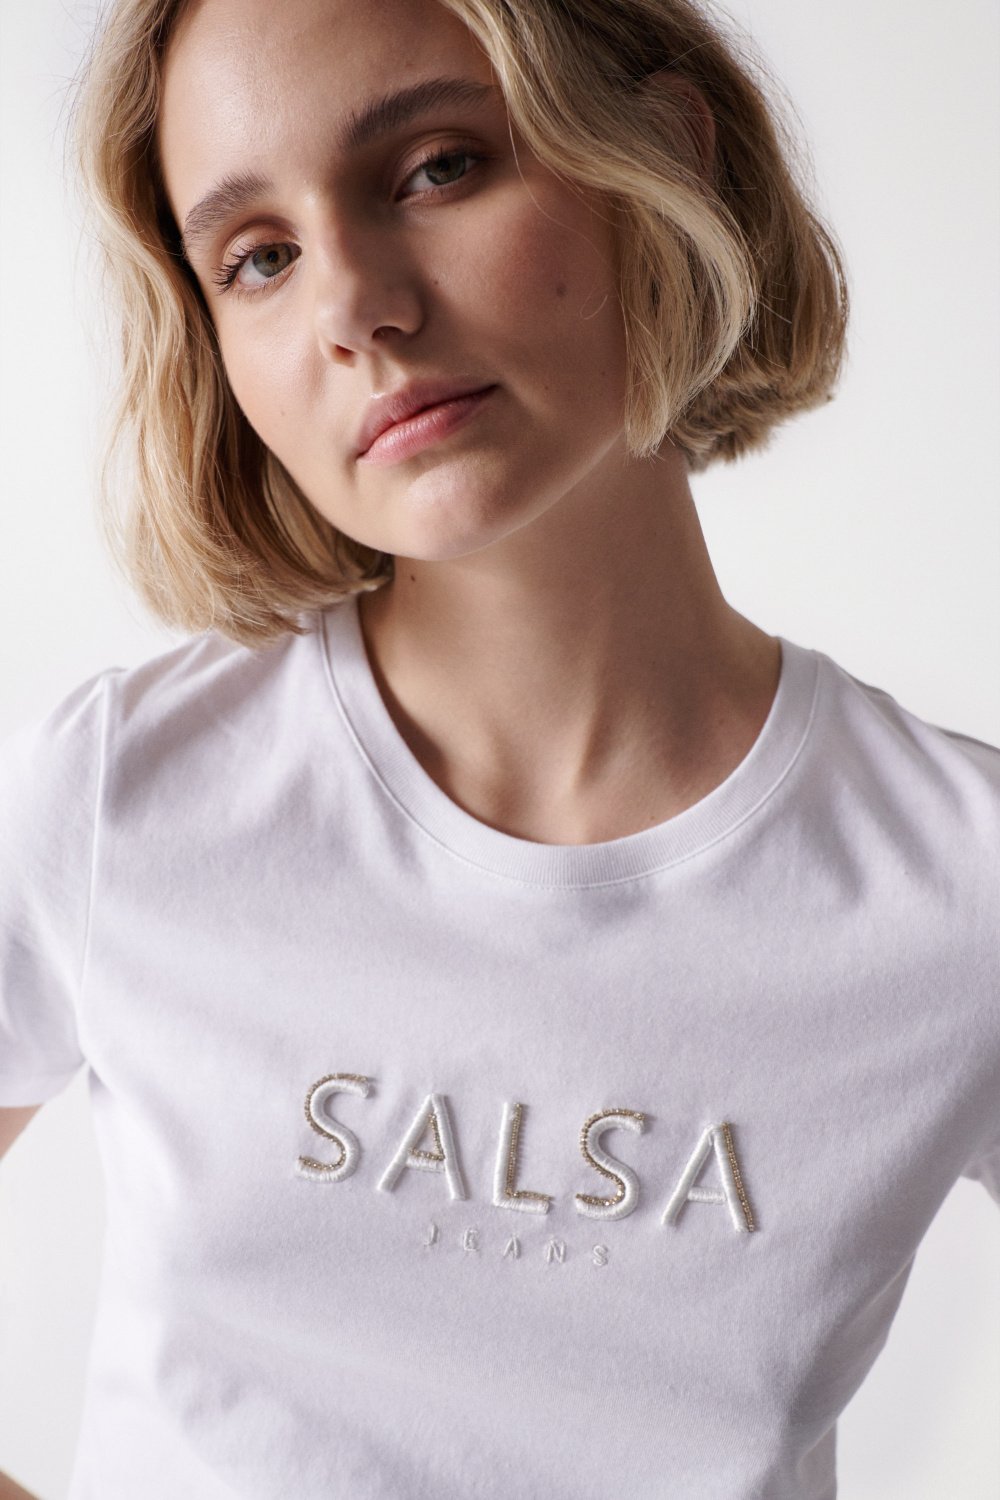 Weies T-Shirt mit Markenaufdruck - Salsa